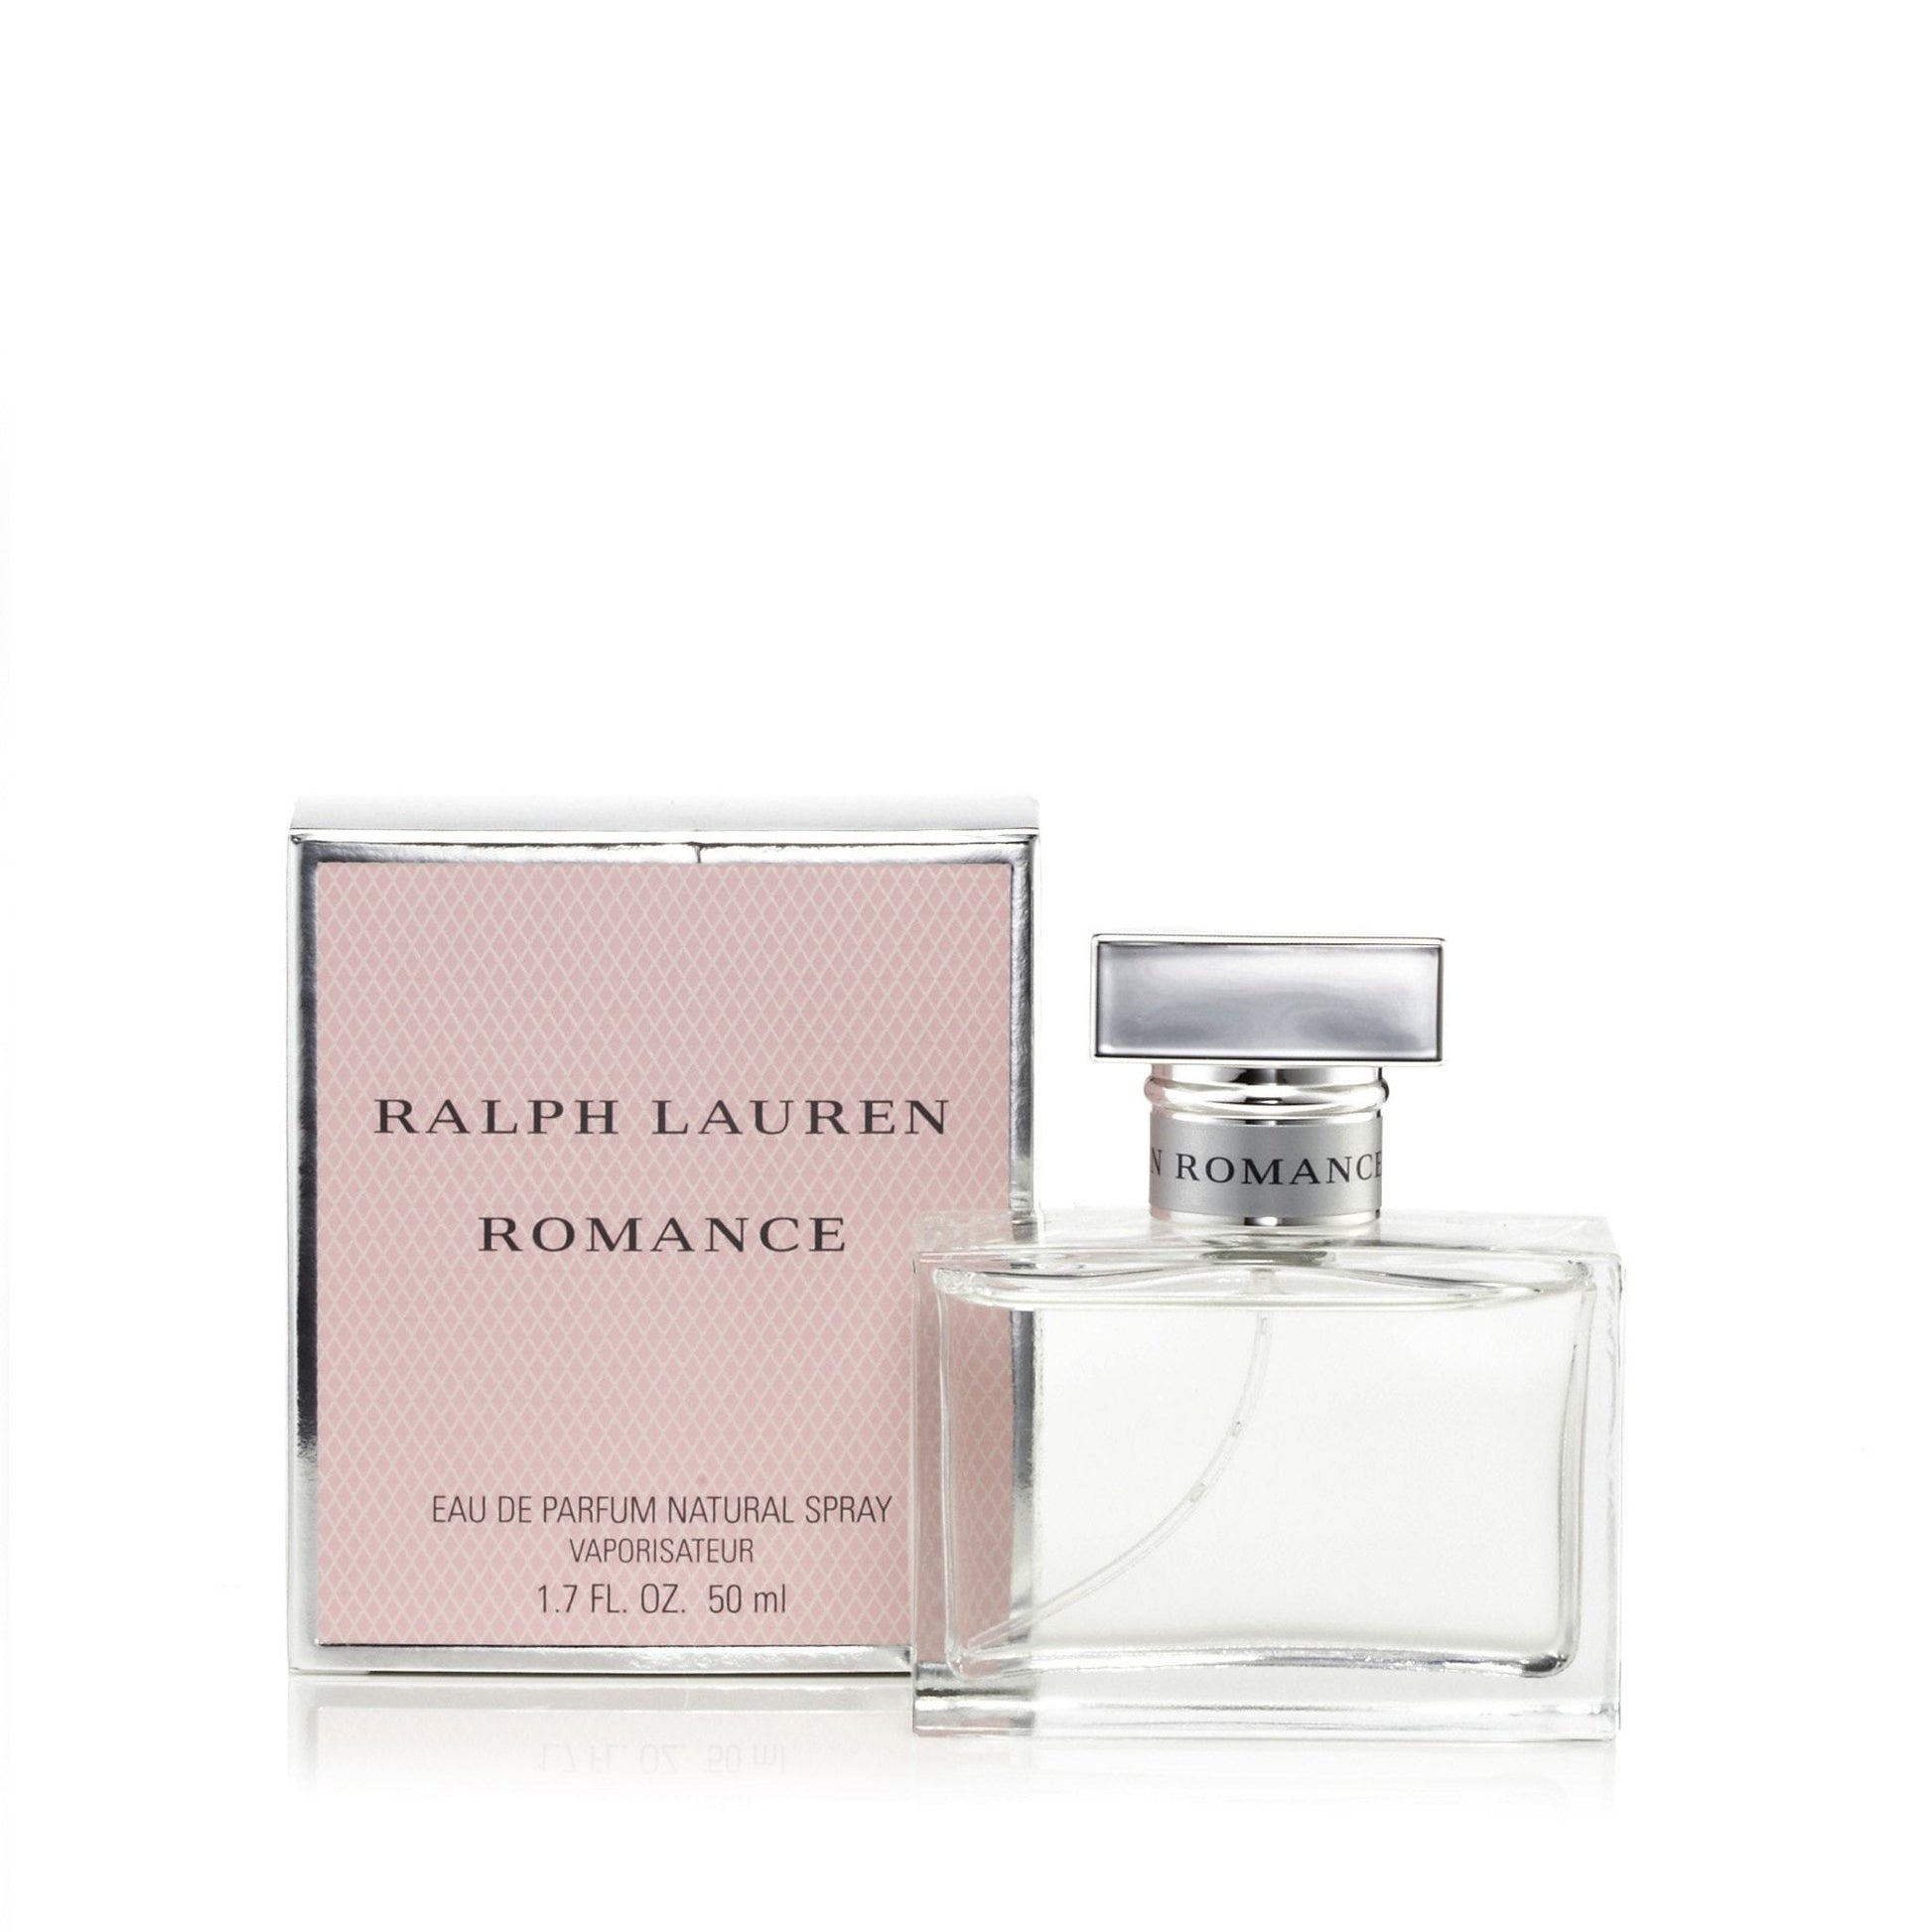 Romance Perfume Eau De Parfum by RALPH LAUREN